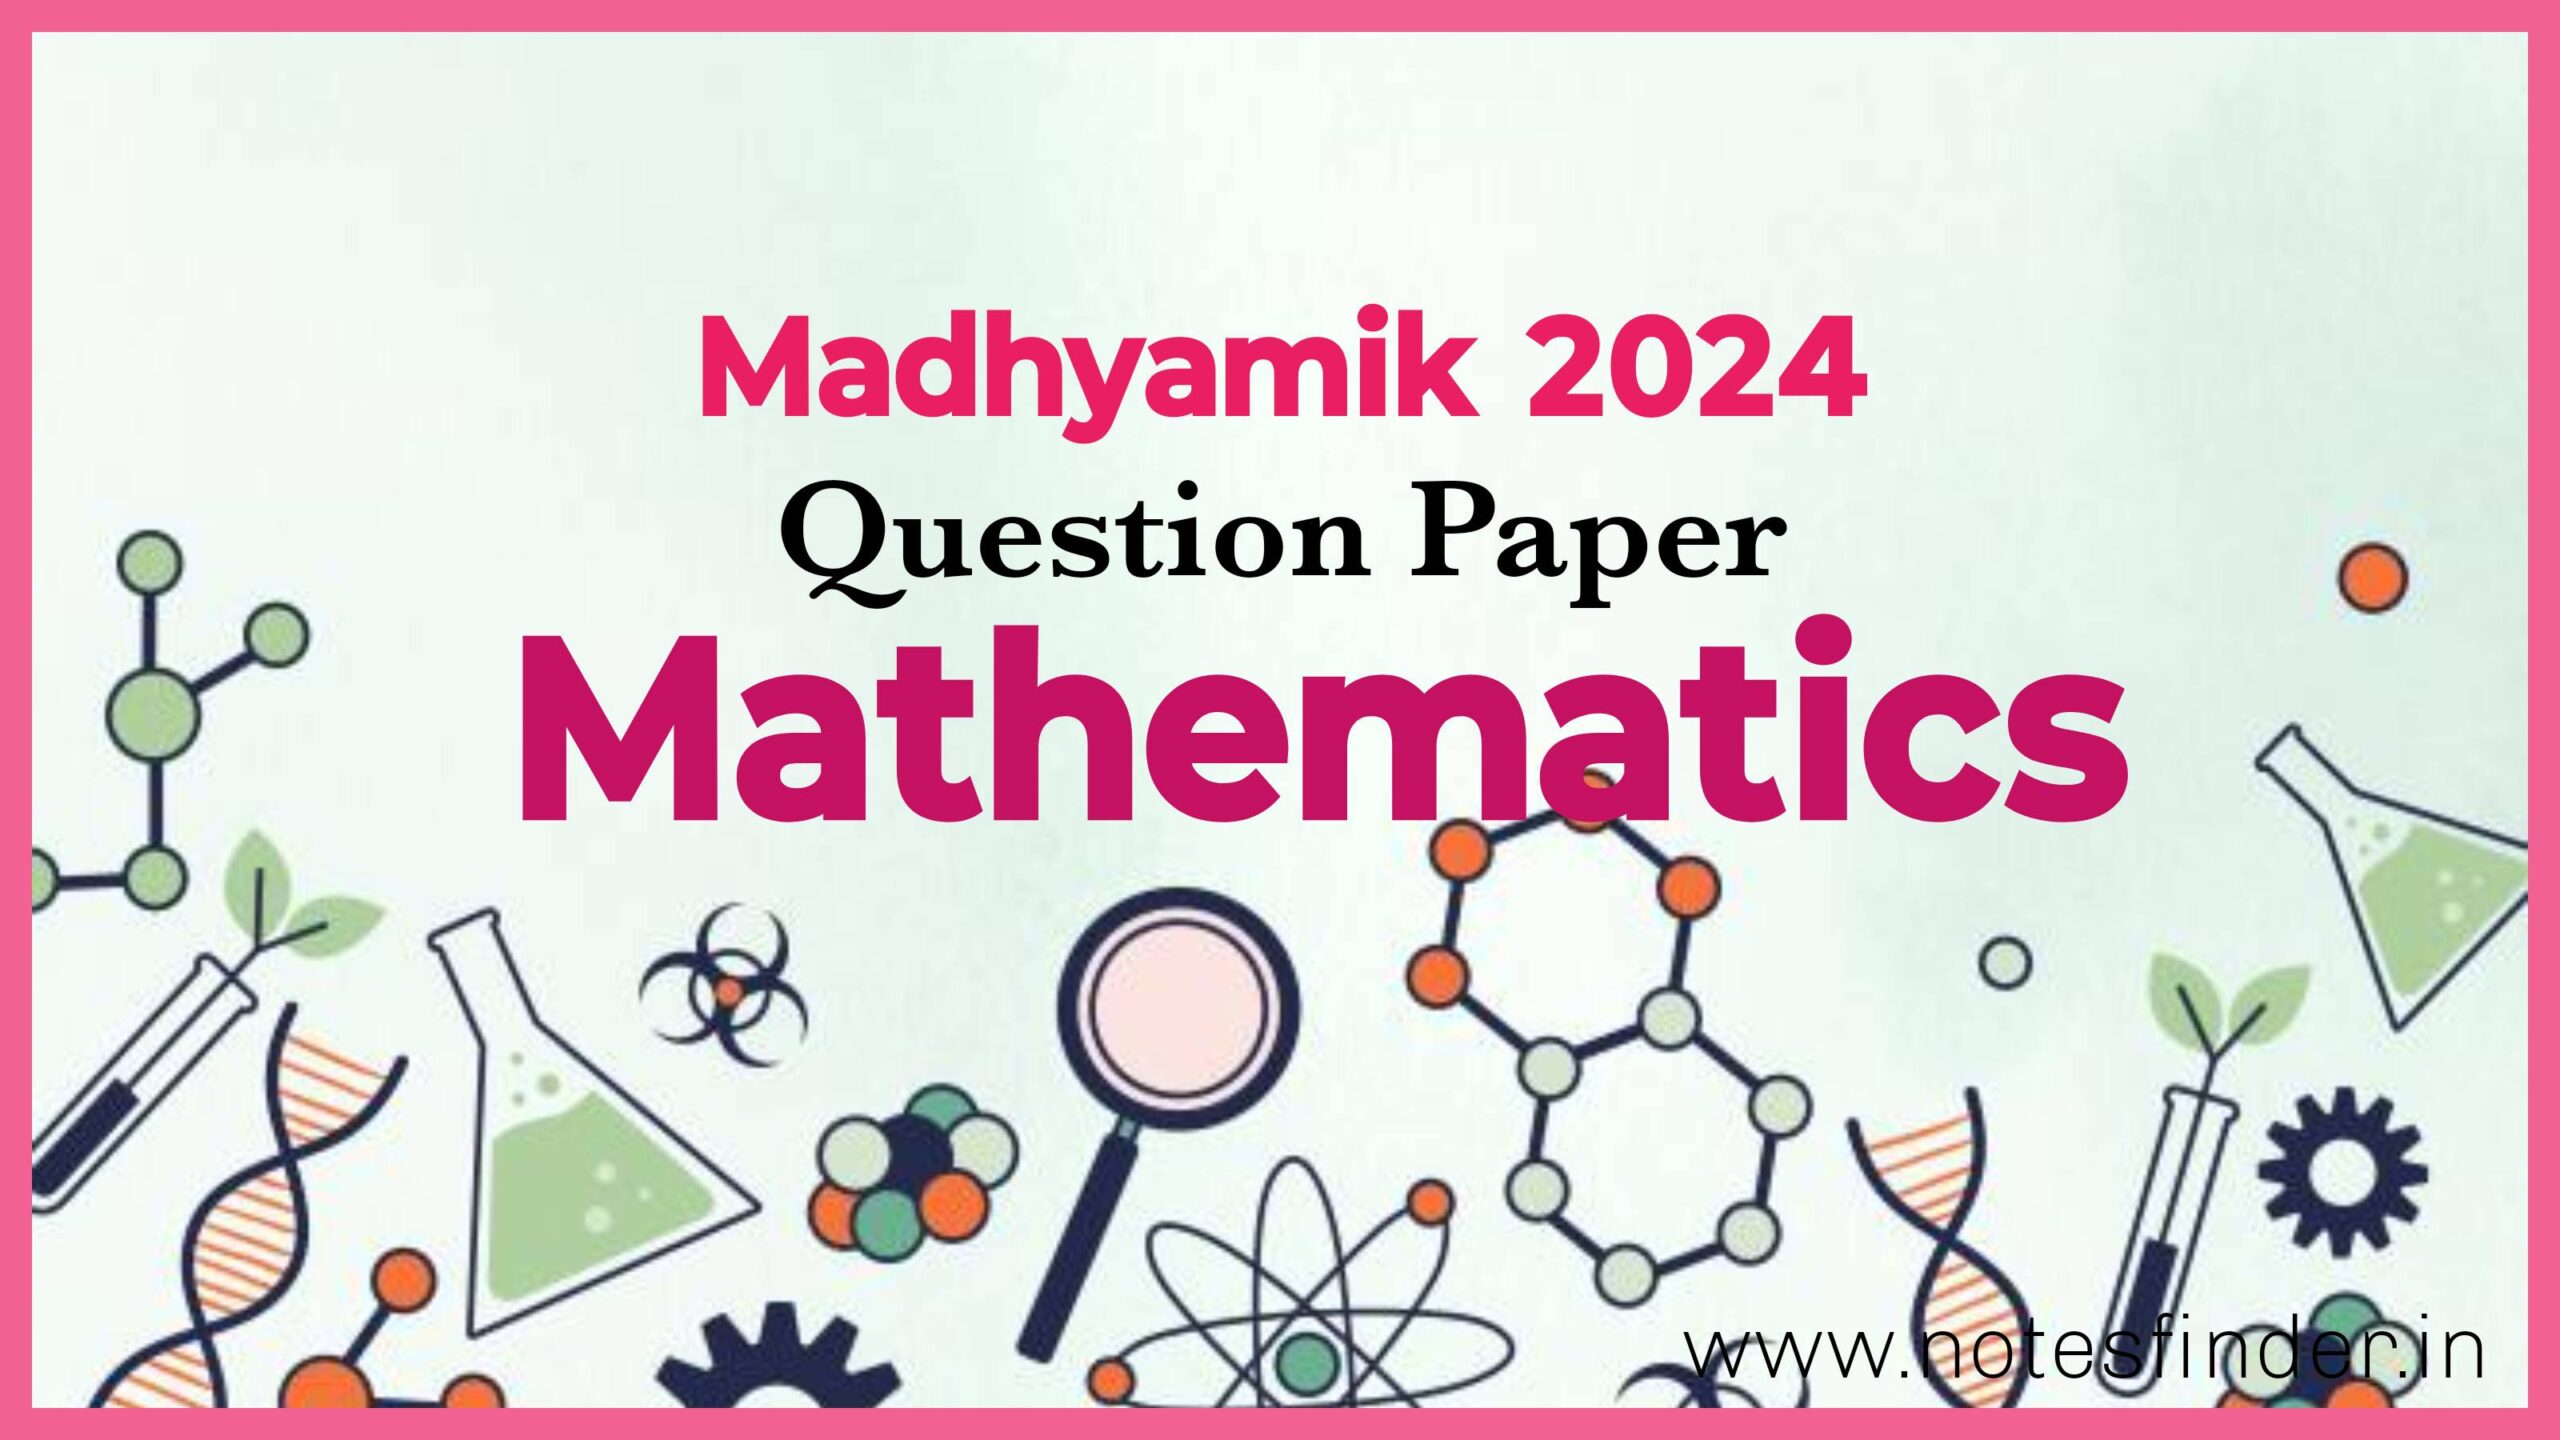 মাধ্যমিক ২০২৪ অংক প্রশ্নপত্র | Madhyamik 2024 Mathematics Question Paper Pdf